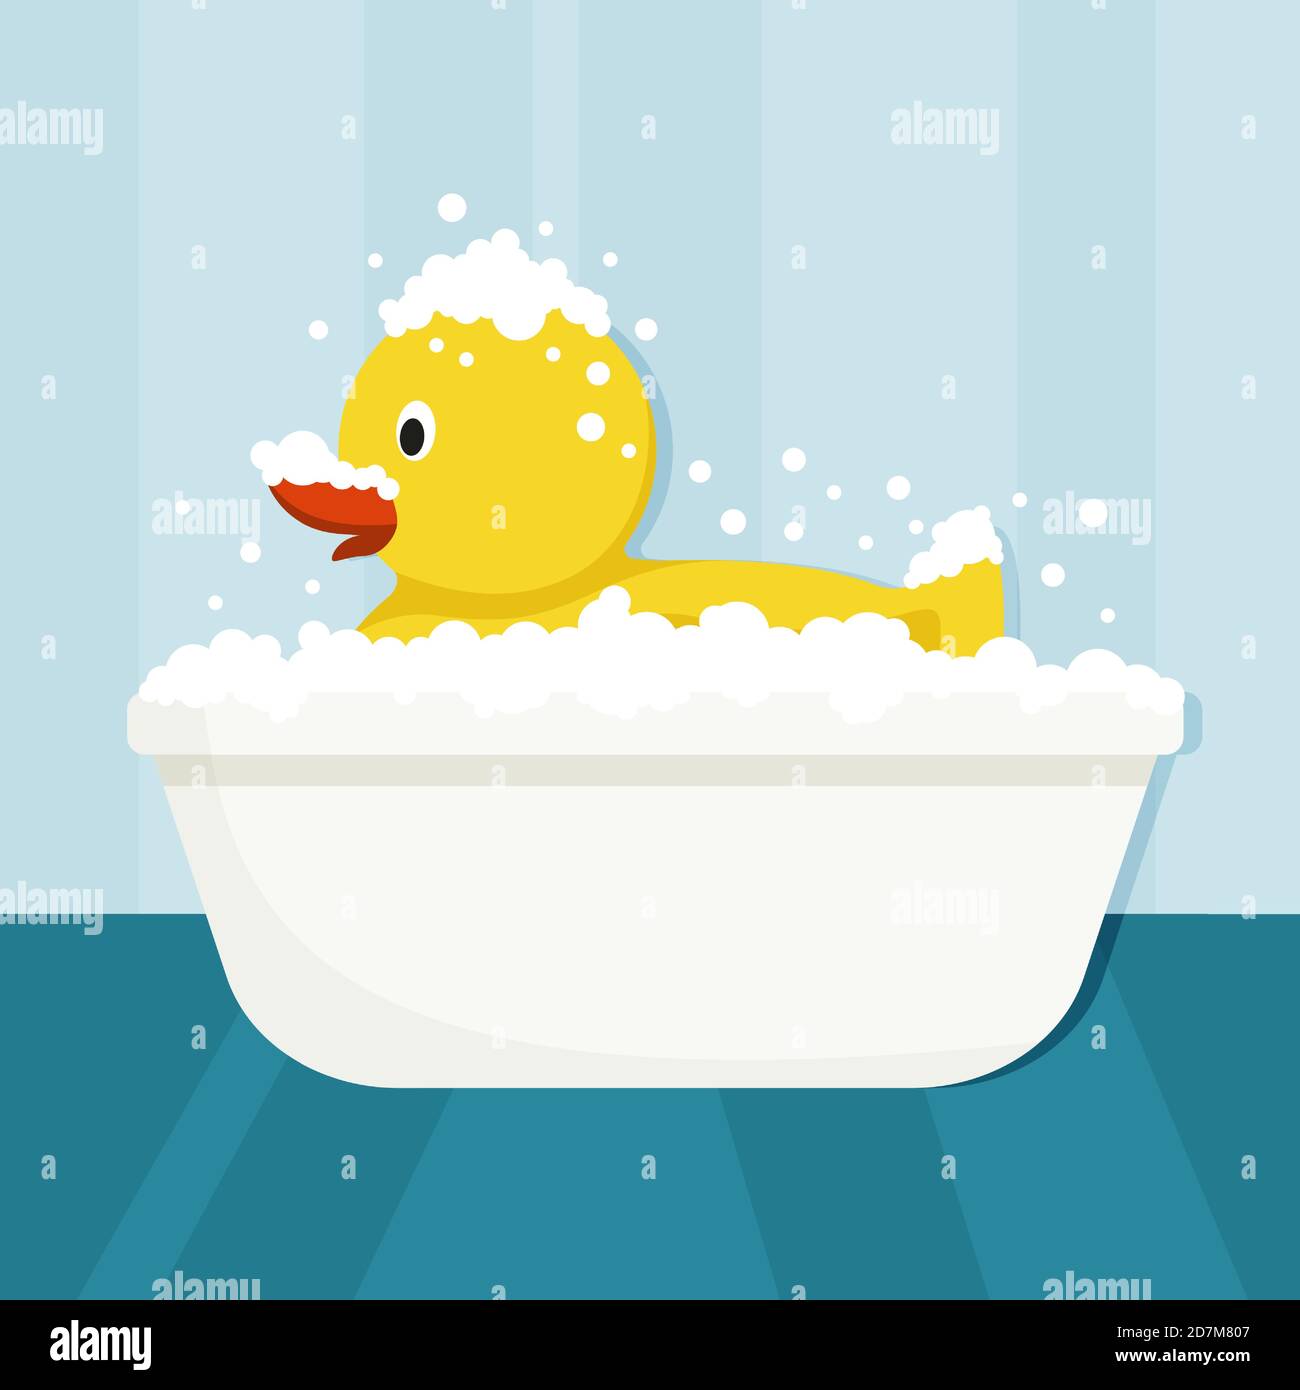 Canard en caoutchouc jaune géant prenant un bain moussant. Intérieur de la salle de bains. Illustration vectorielle plate Illustration de Vecteur